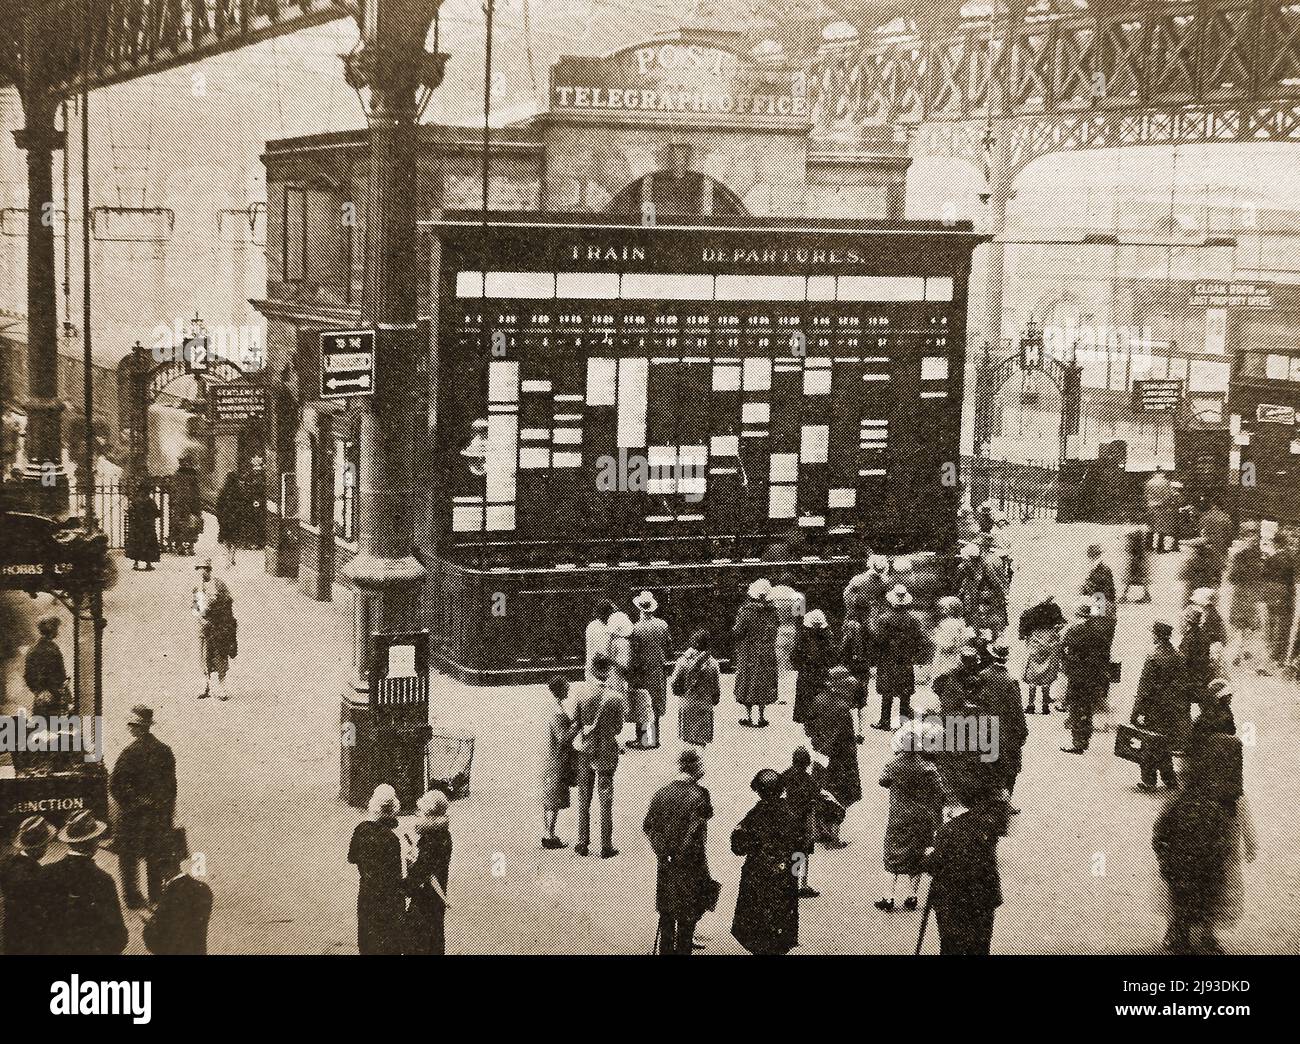 Une photographie précoce du panneau d'information sur la plate-forme de la gare de Victoria, Londres, Royaume-Uni avec le bureau de télégraphe de poste immédiatement derrière lui Banque D'Images